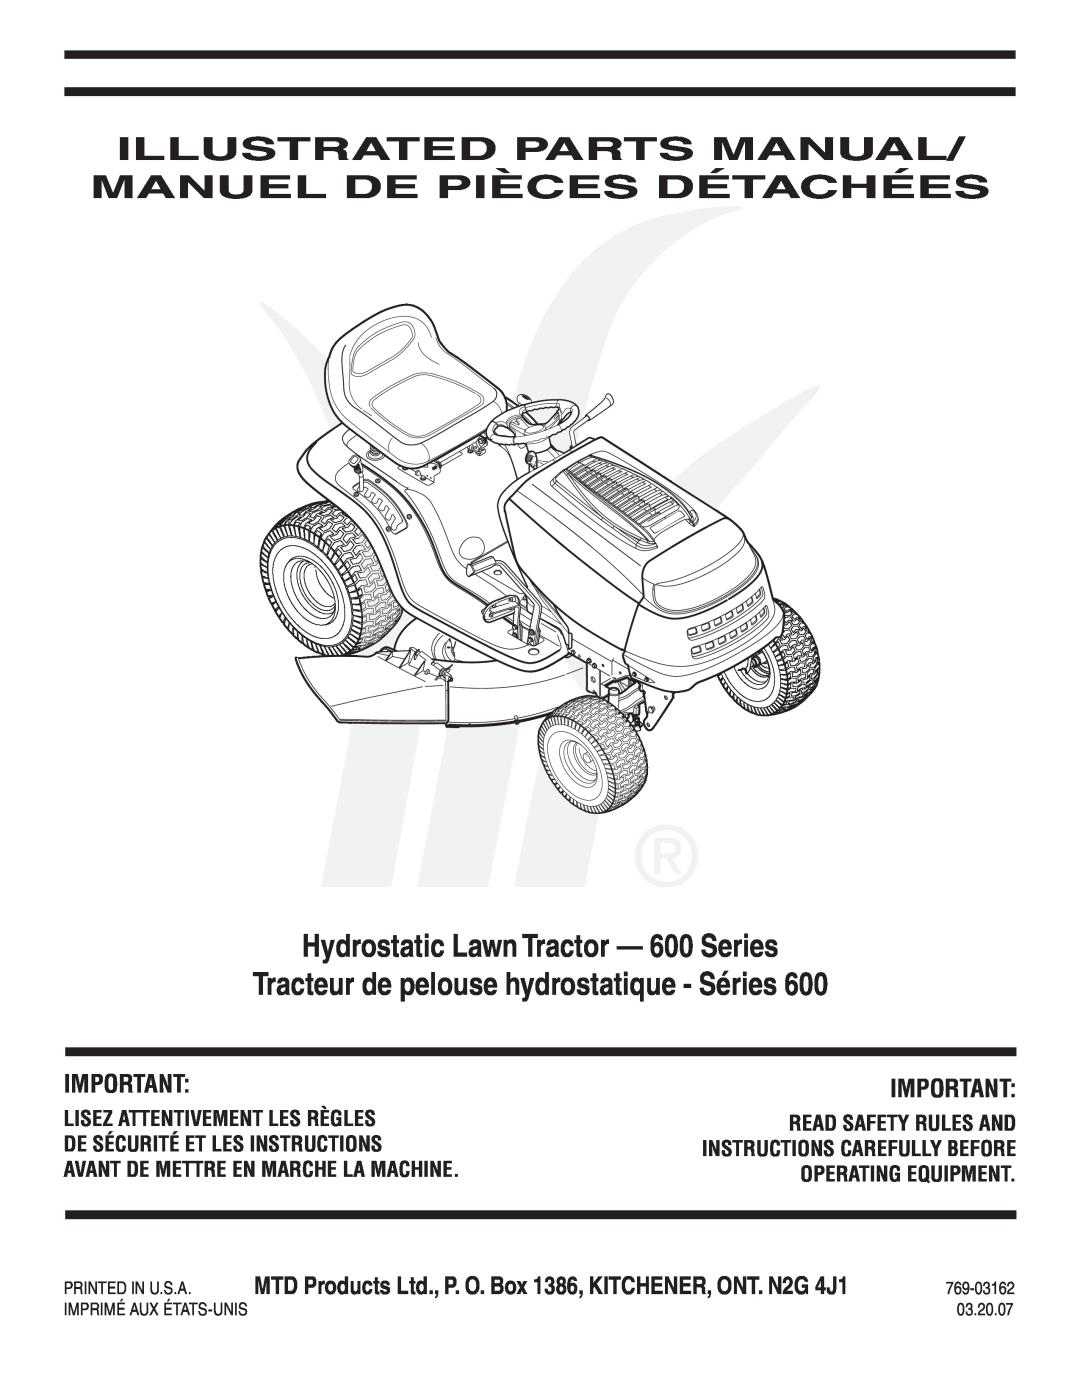 MTD manual AutoDrive Lawn Tractor - 600 Series, Tracteur de pelouse AutoDrive - Séries, 769-03166, 03.27.07 